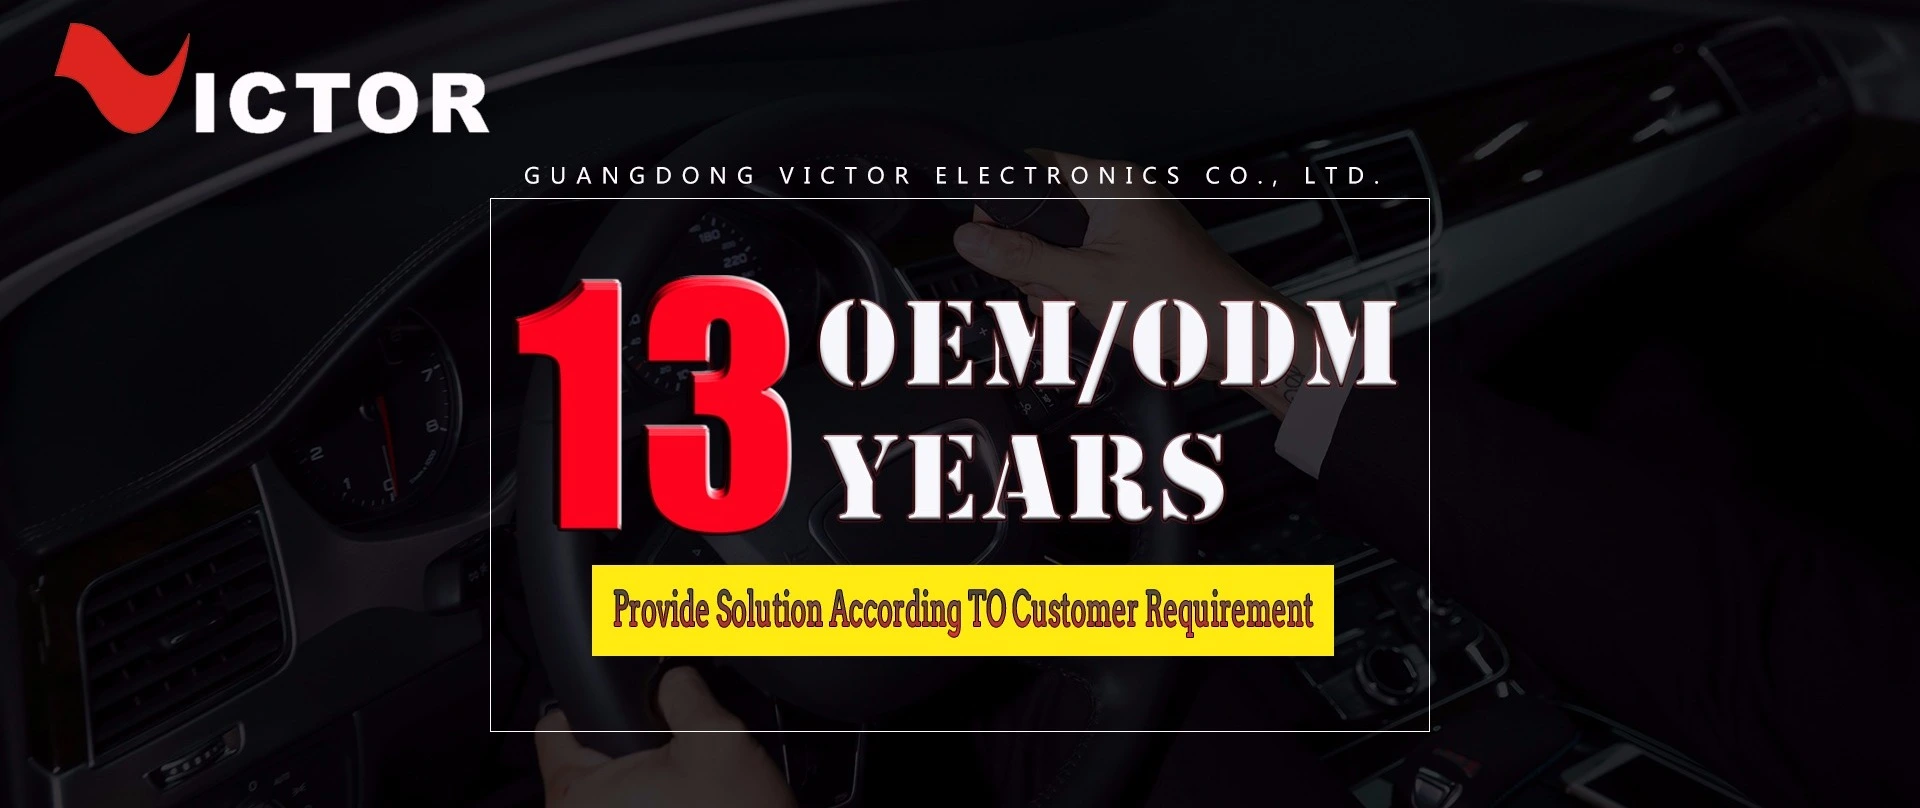 Guangdong Victor Electronics Co., Ltd.